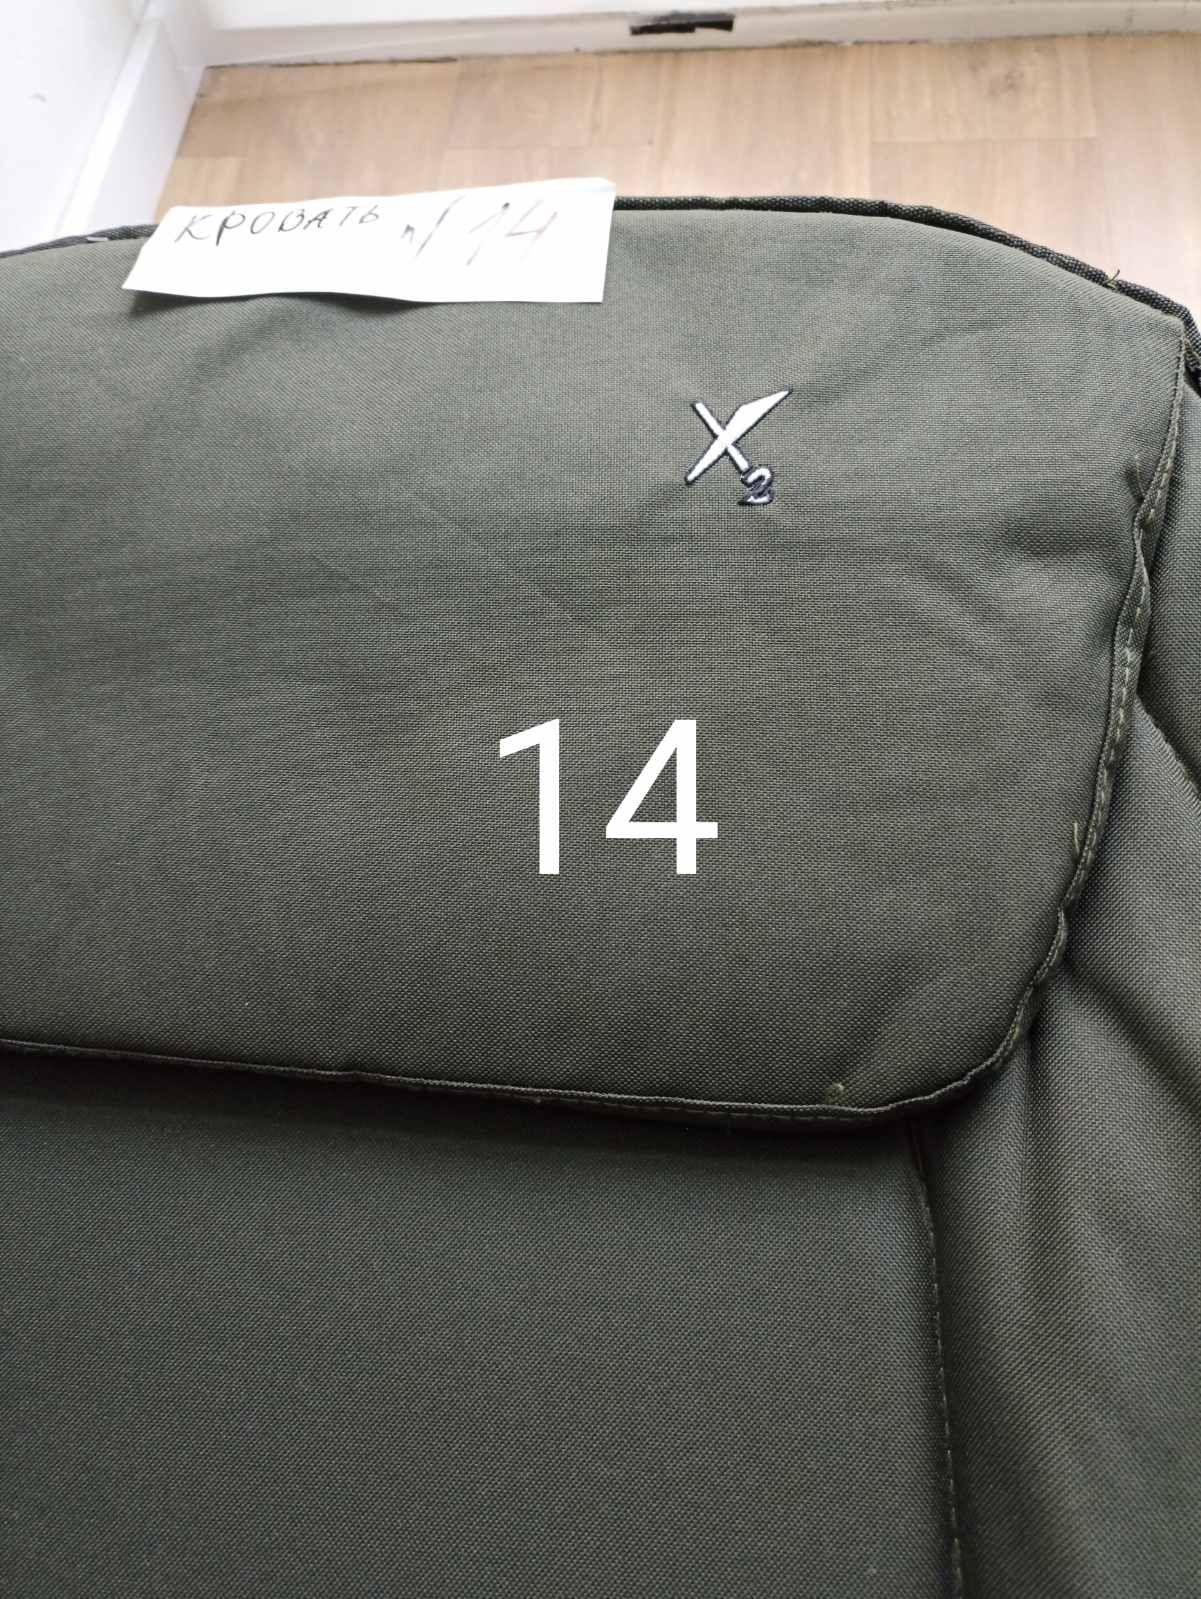 Карповая кровать-  кресло " X ² "